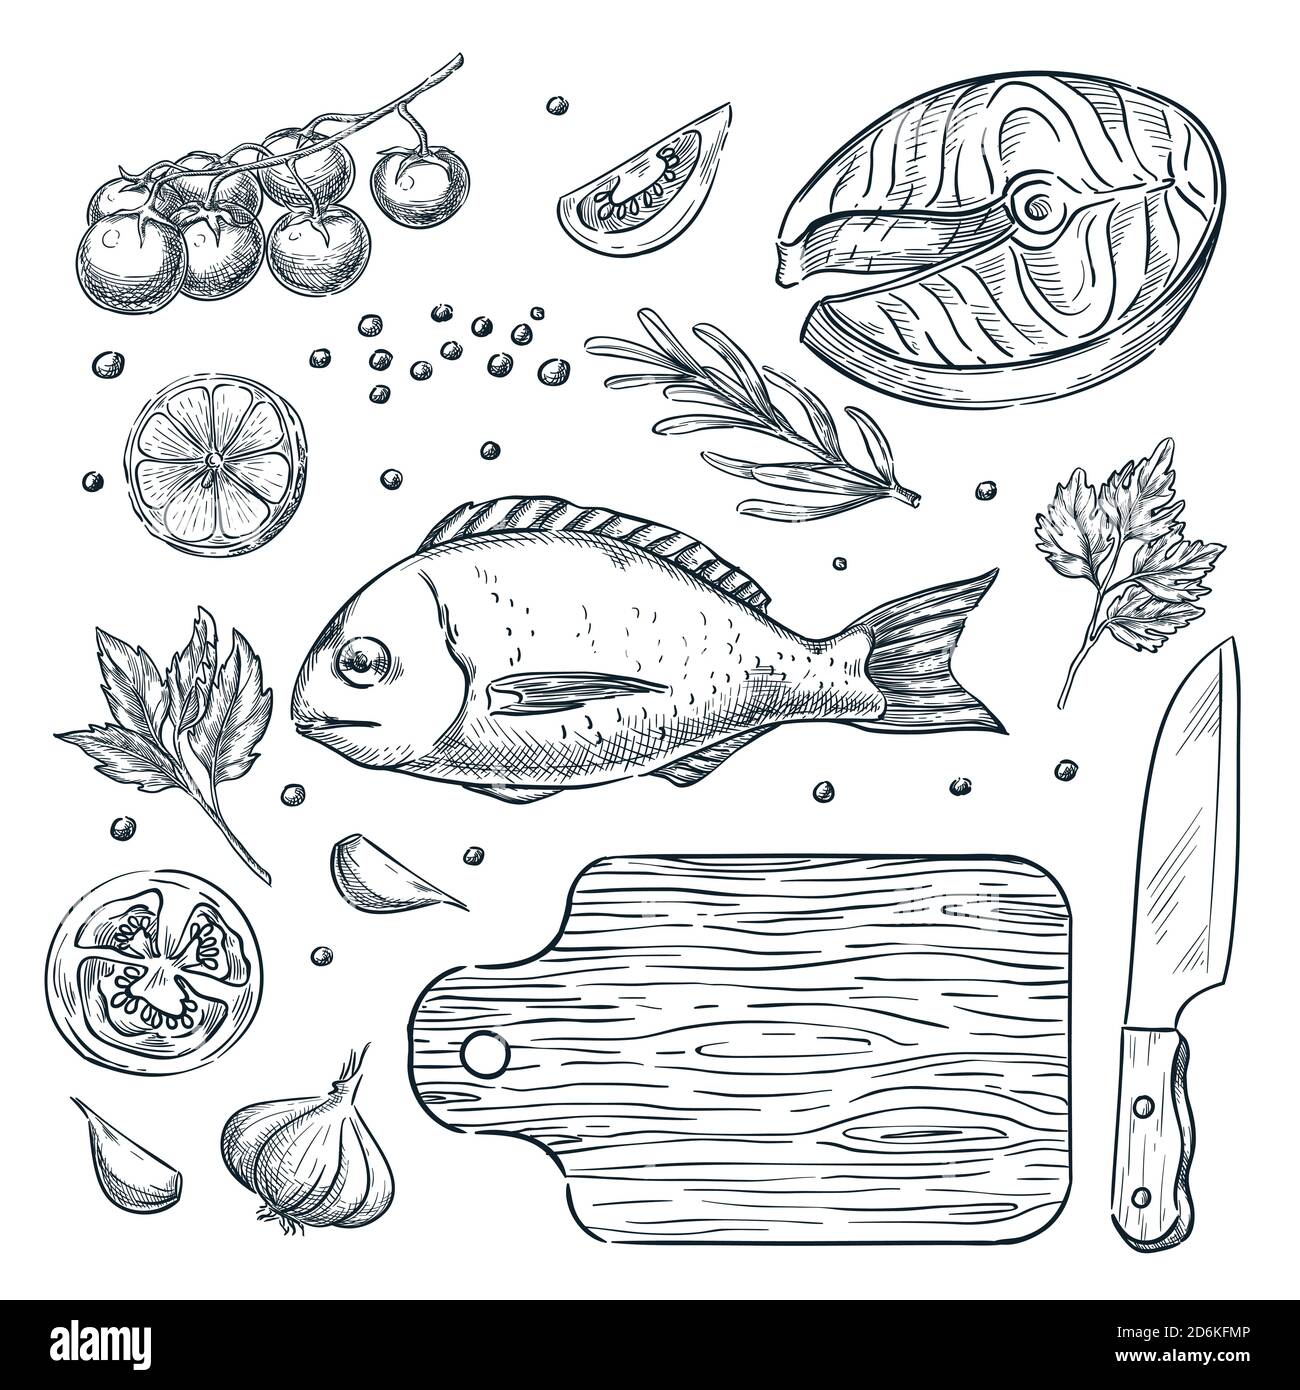 Kochen Fisch dorado und Lachs Steak, Vektor-Skizze Illustration. Set von isolierten handgezeichneten Lebensmitteln Zutat, Gemüse, Gewürze. Meeresfrüchte-Restaurant m Stock Vektor